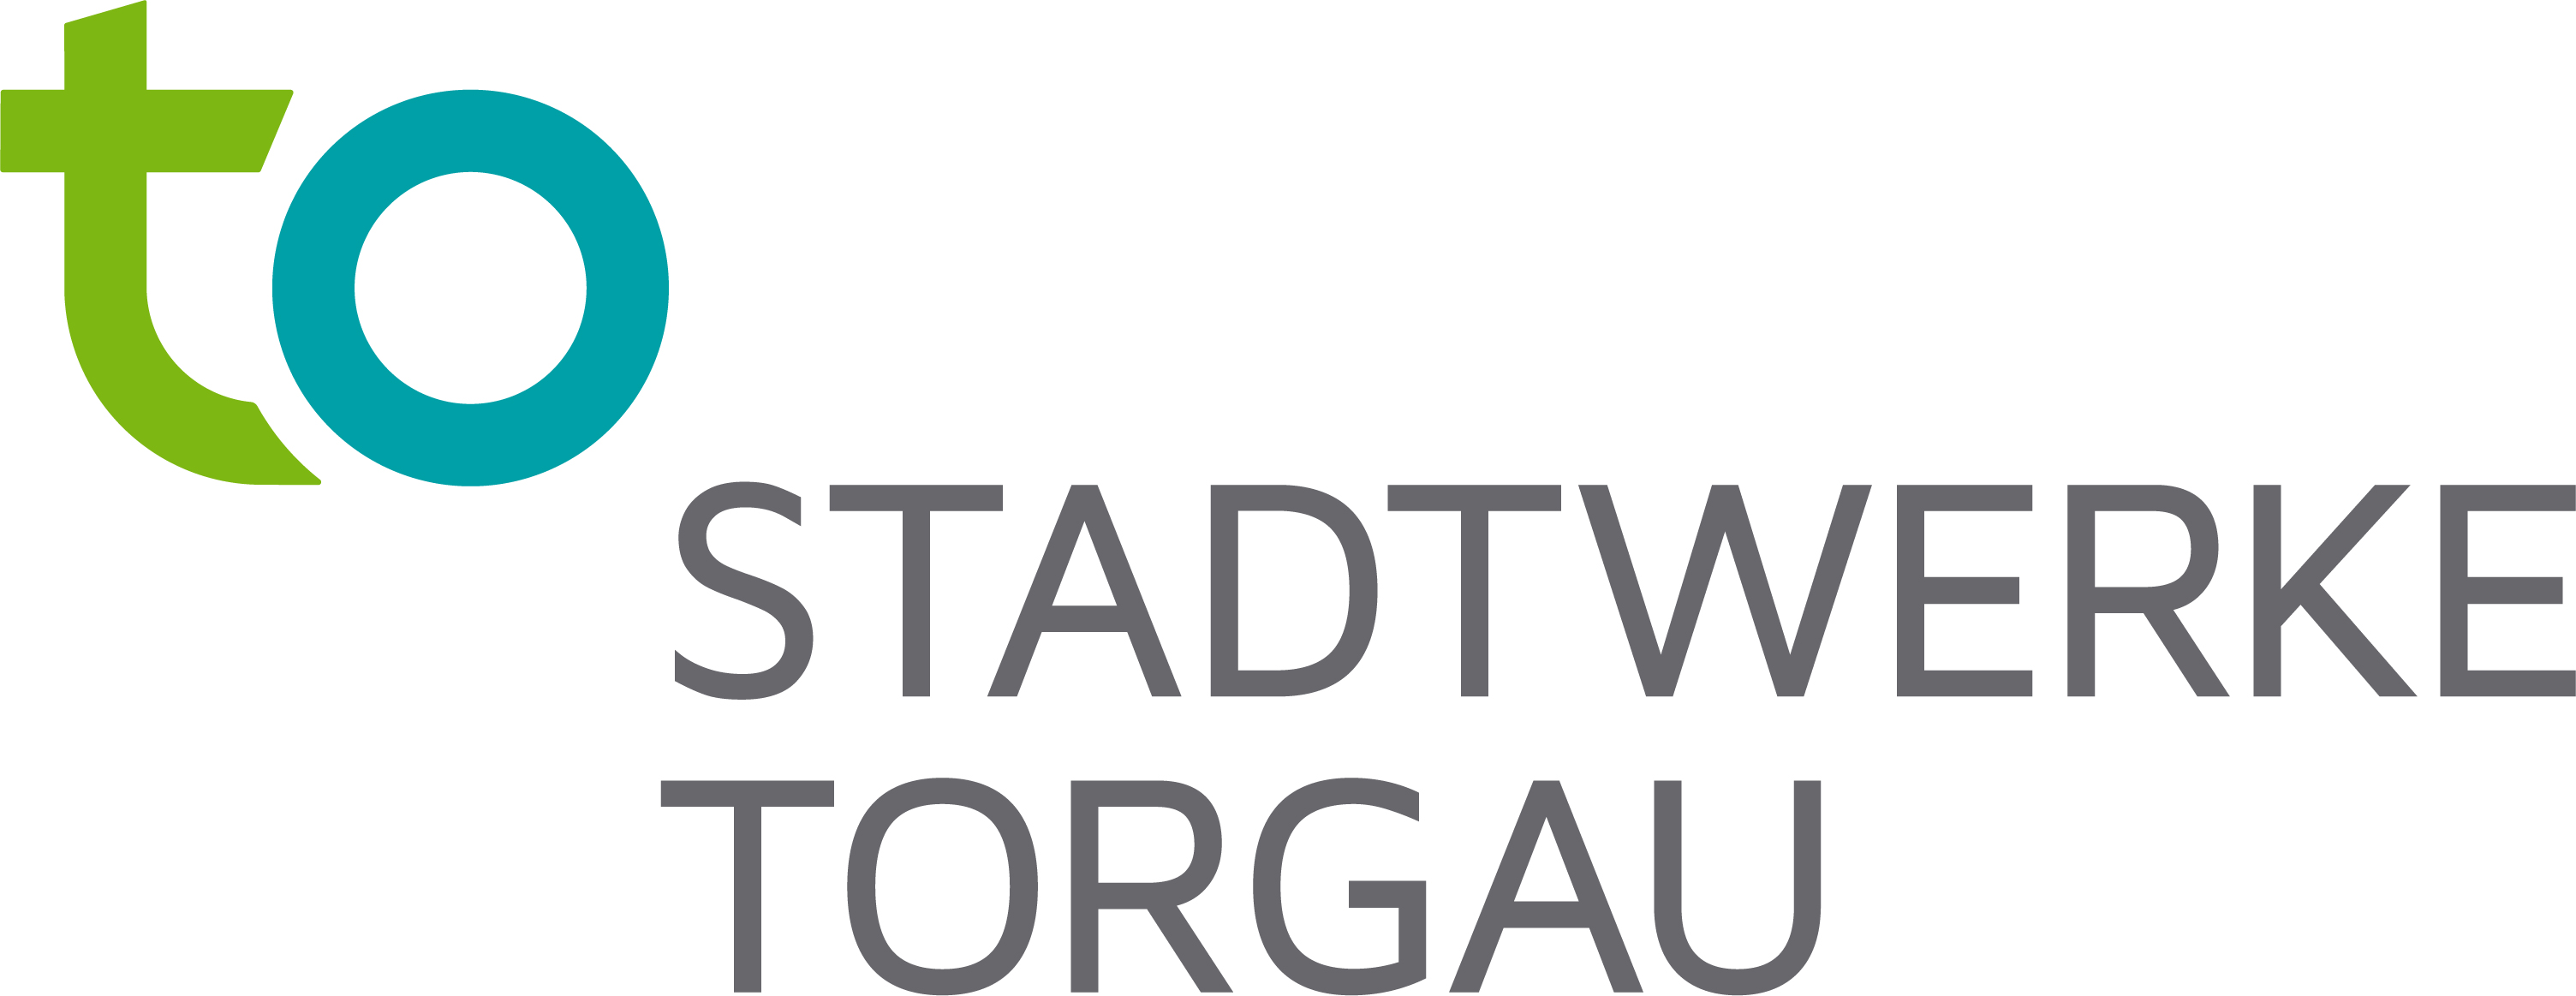 Stadtwerke Torgau